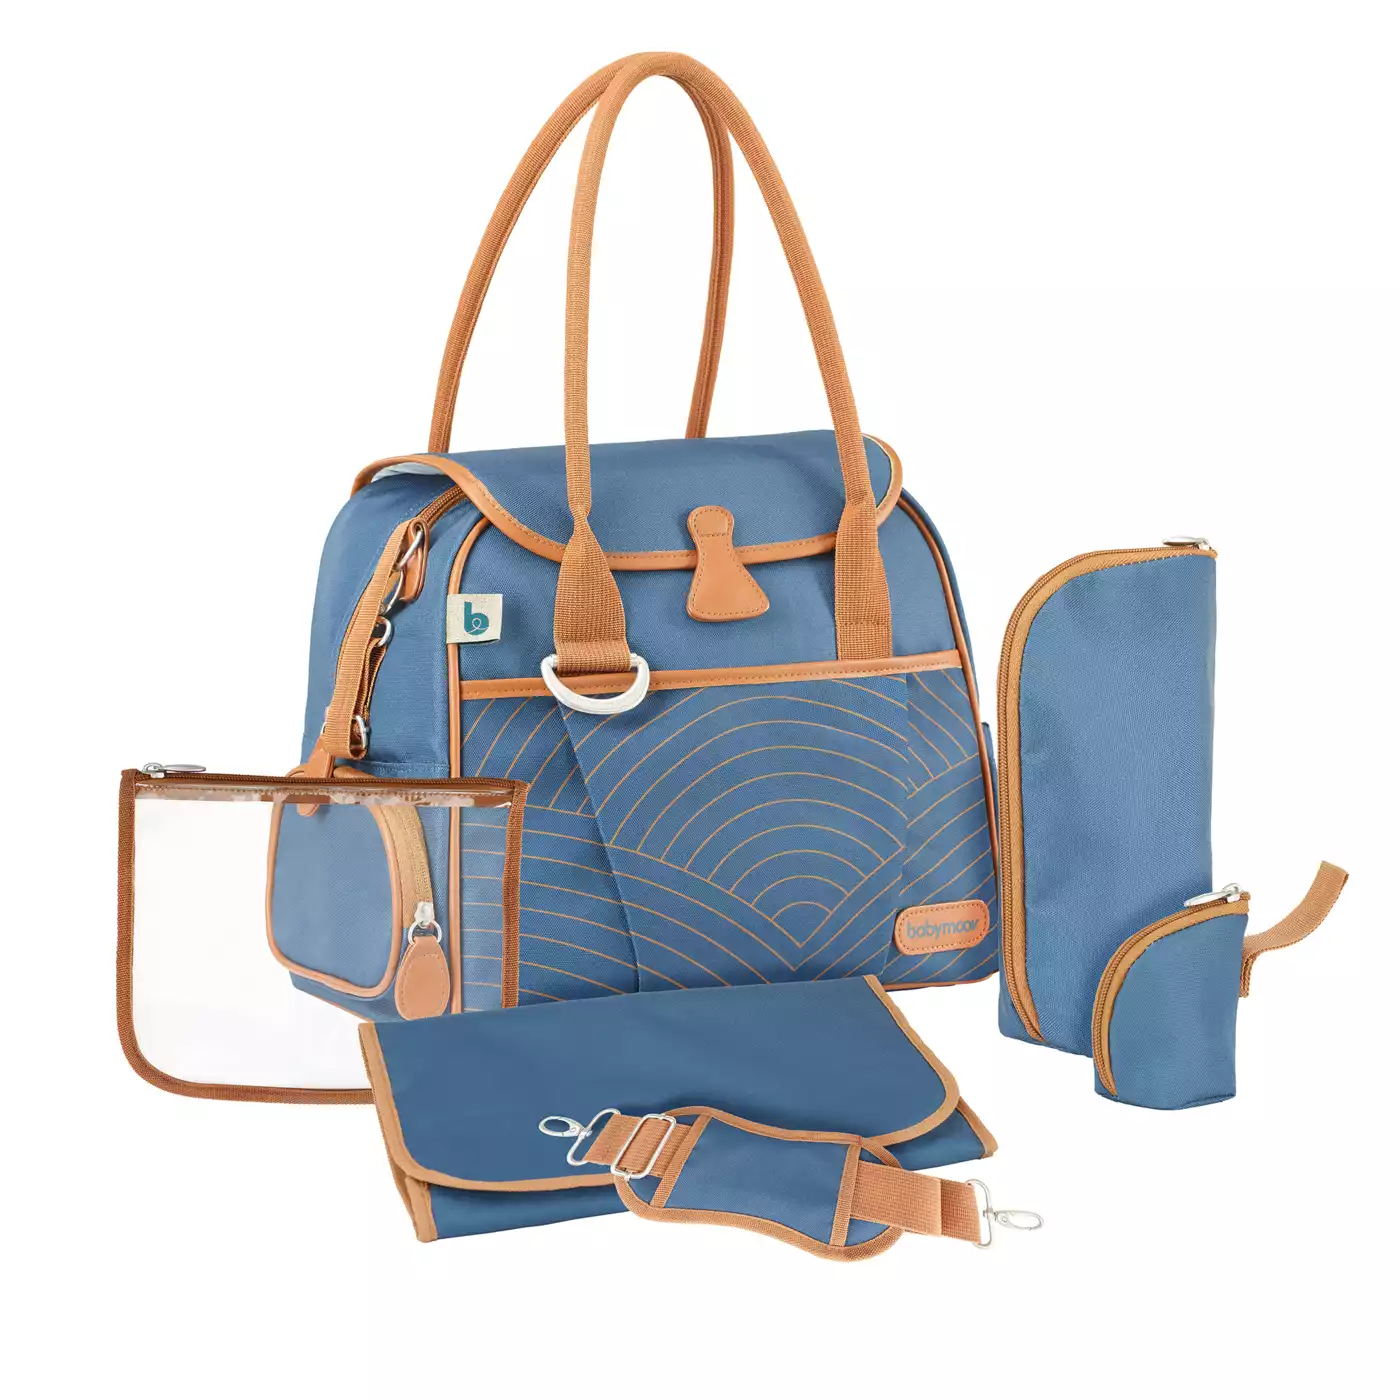 Wickeltasche Style Bag Blue Navy babymoov Blau 2000565168519 3